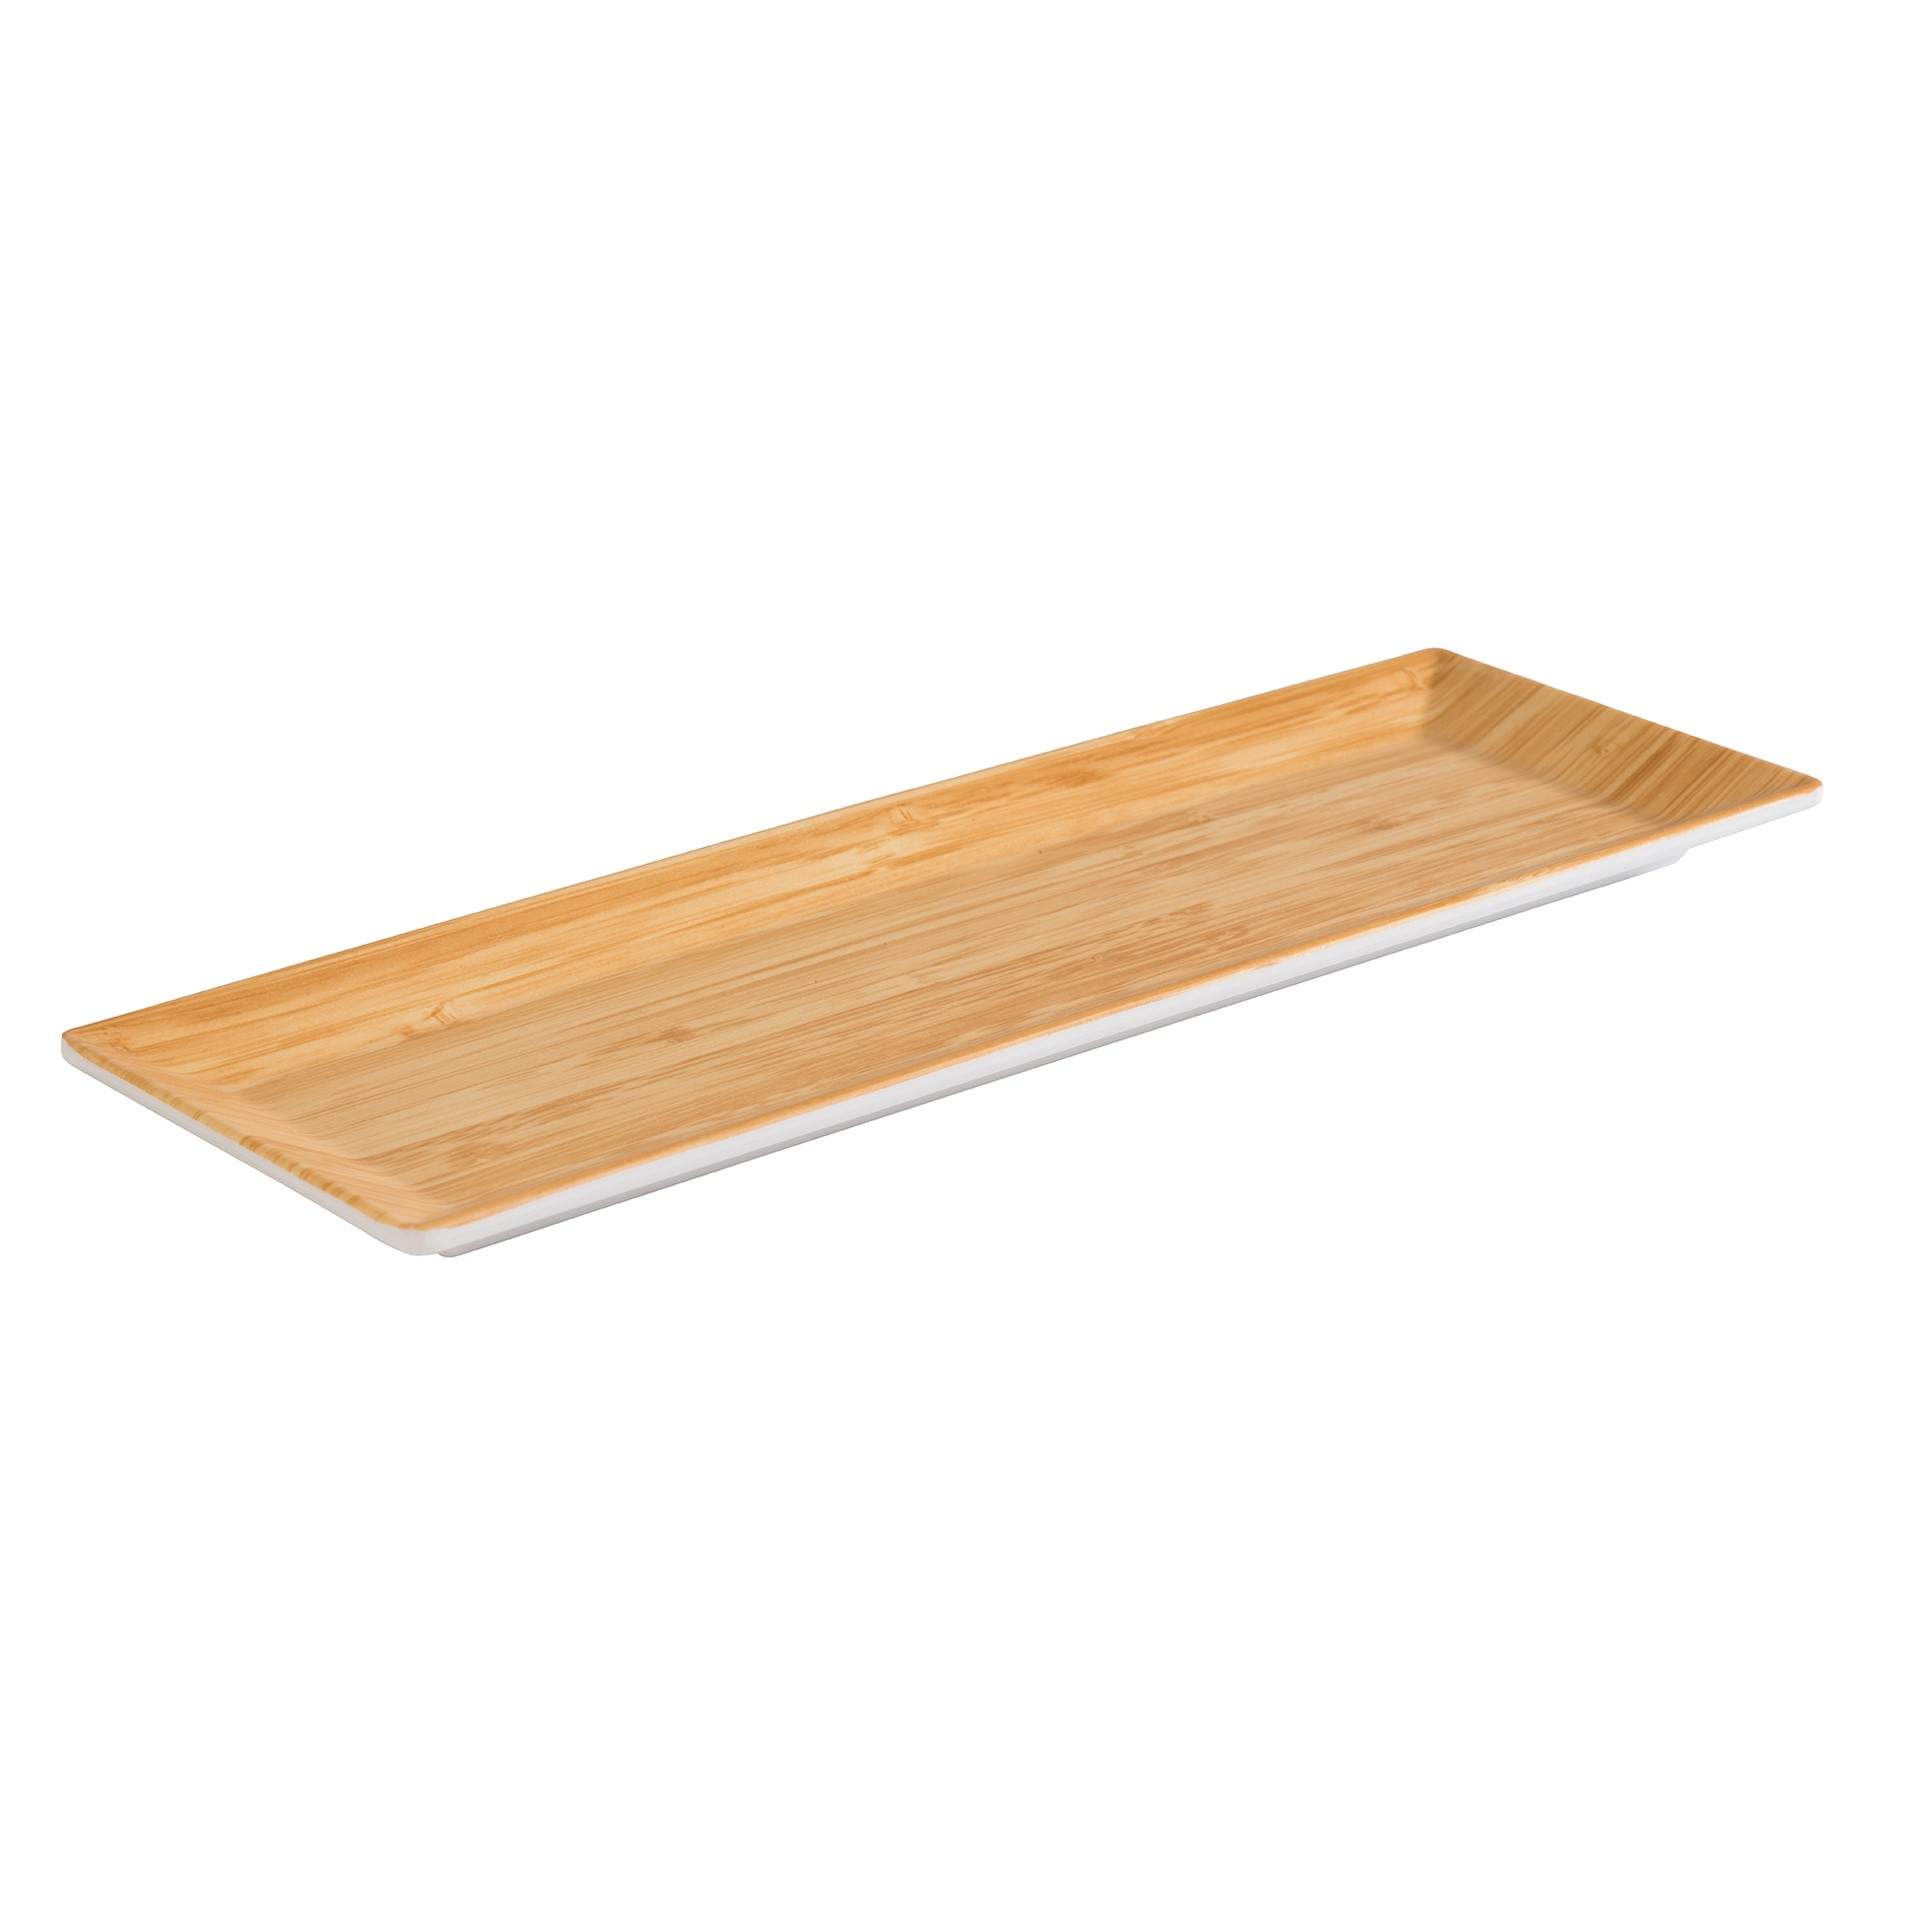 Tablett - Serie Bamboo - bambus / weiß - rechteckig - Abm. 31,0 x 10,5 x 2,0 cm - Melamin - 84805-B